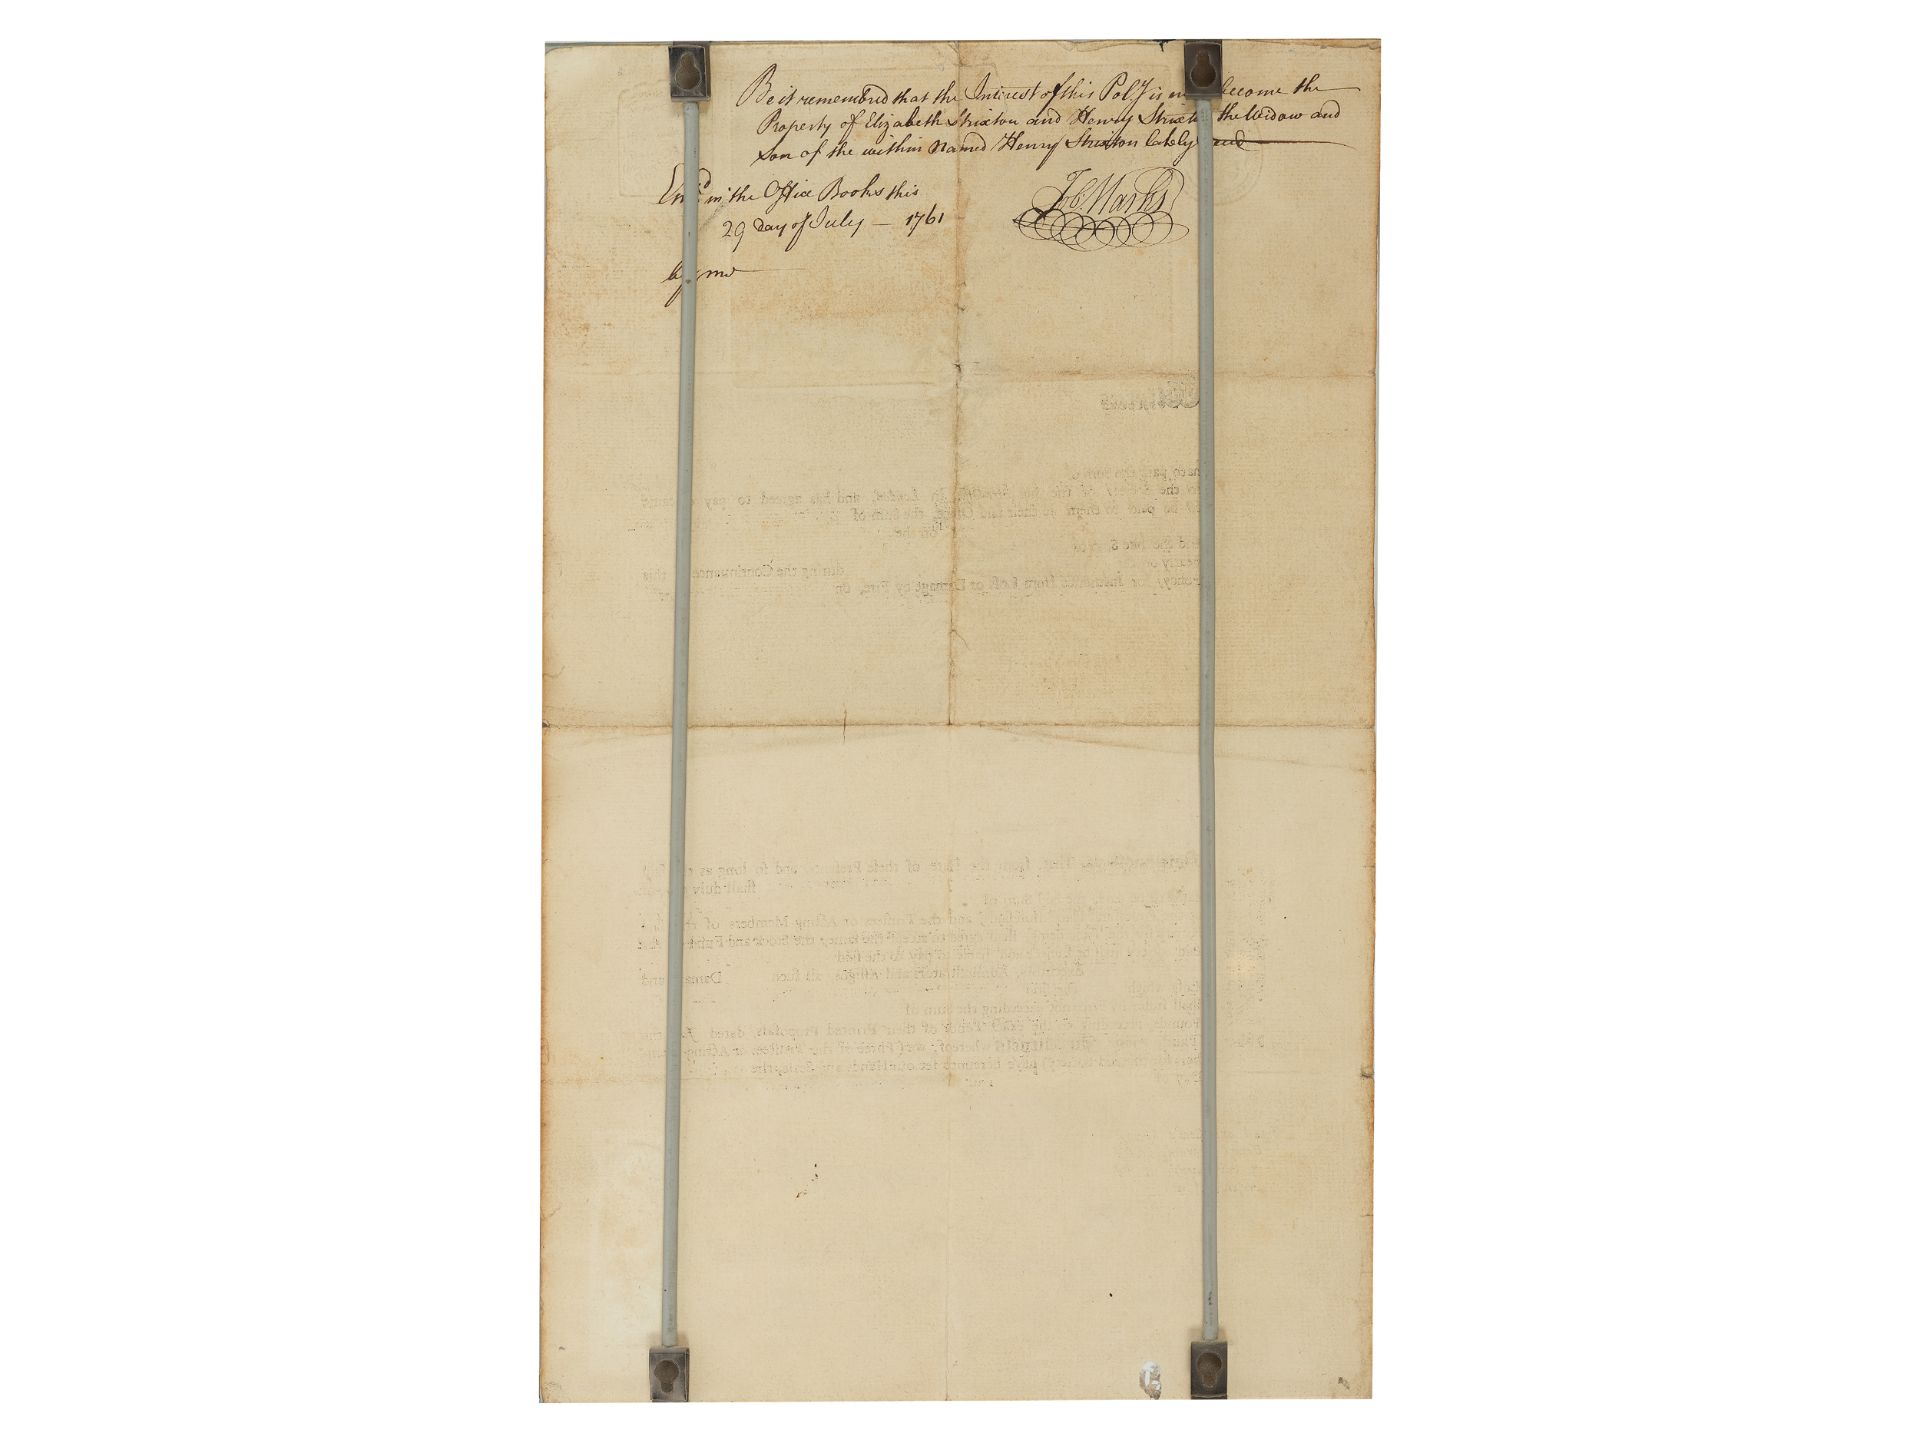 Sun Fire Office, Gedrucktes & handbeschriebenes Dokument, Datiert 1760 - Bild 2 aus 2